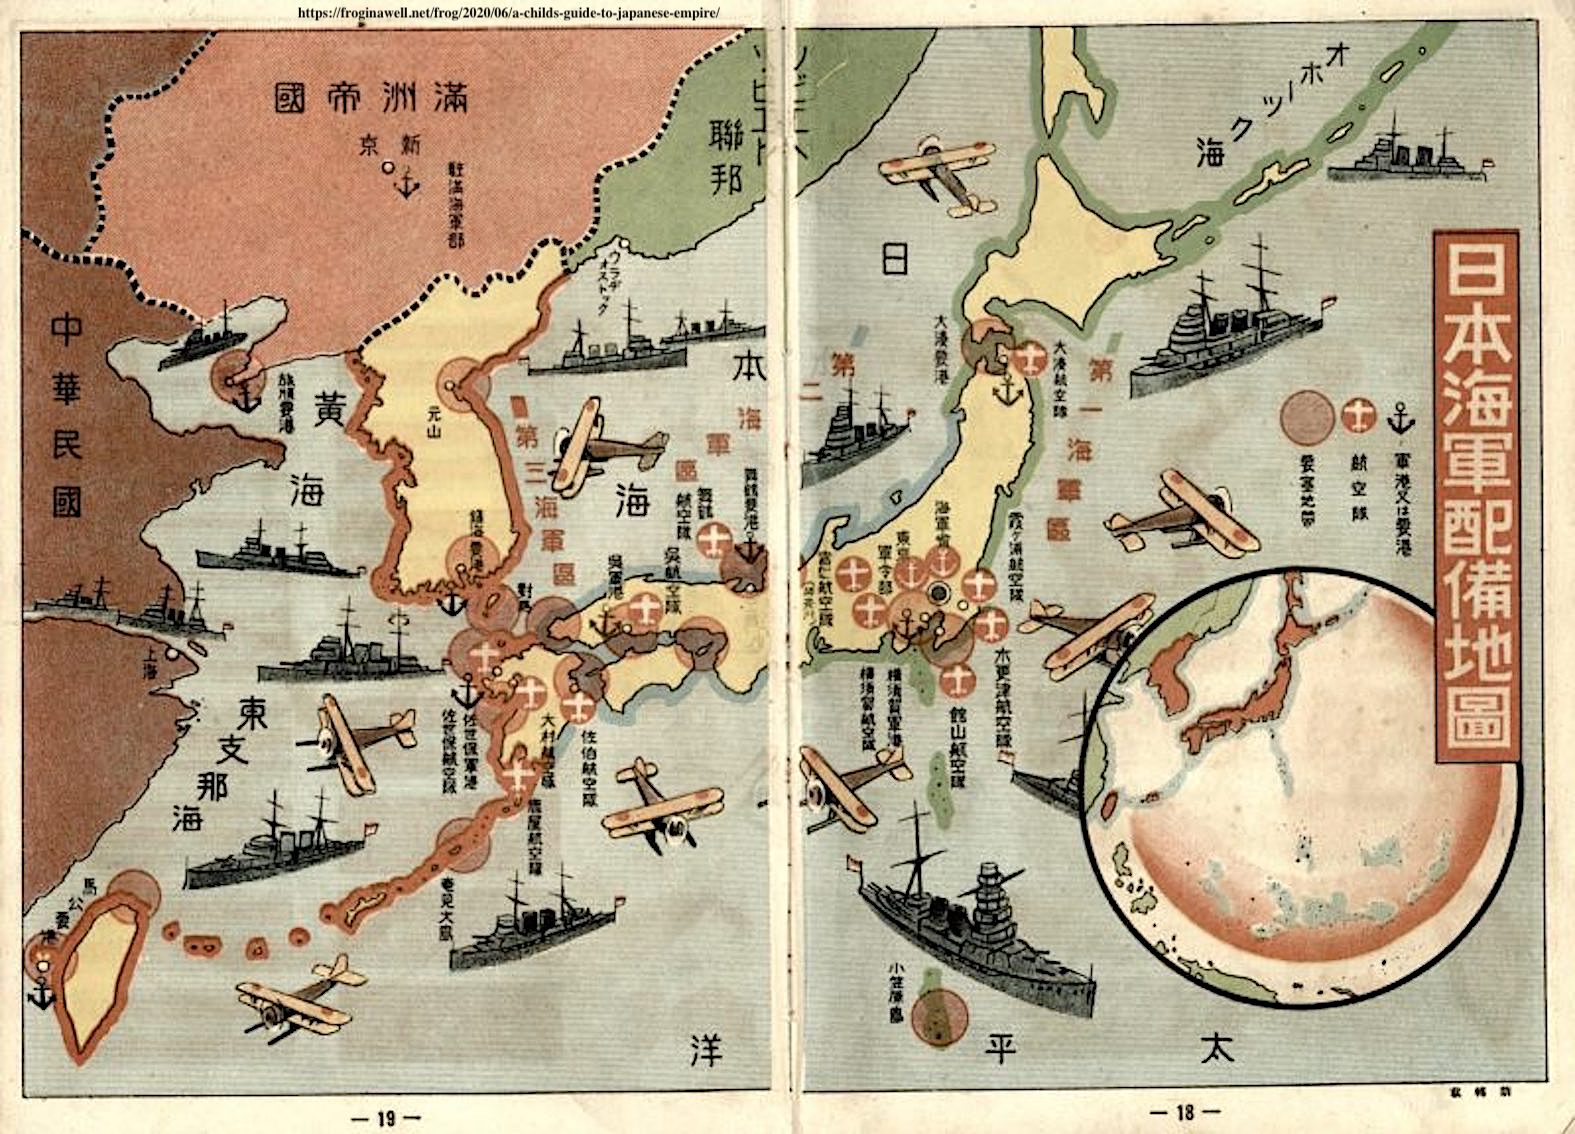 大日本帝国における医療と衛生:Medicine and Hygiene in the Japanese Empire: 1931-1945